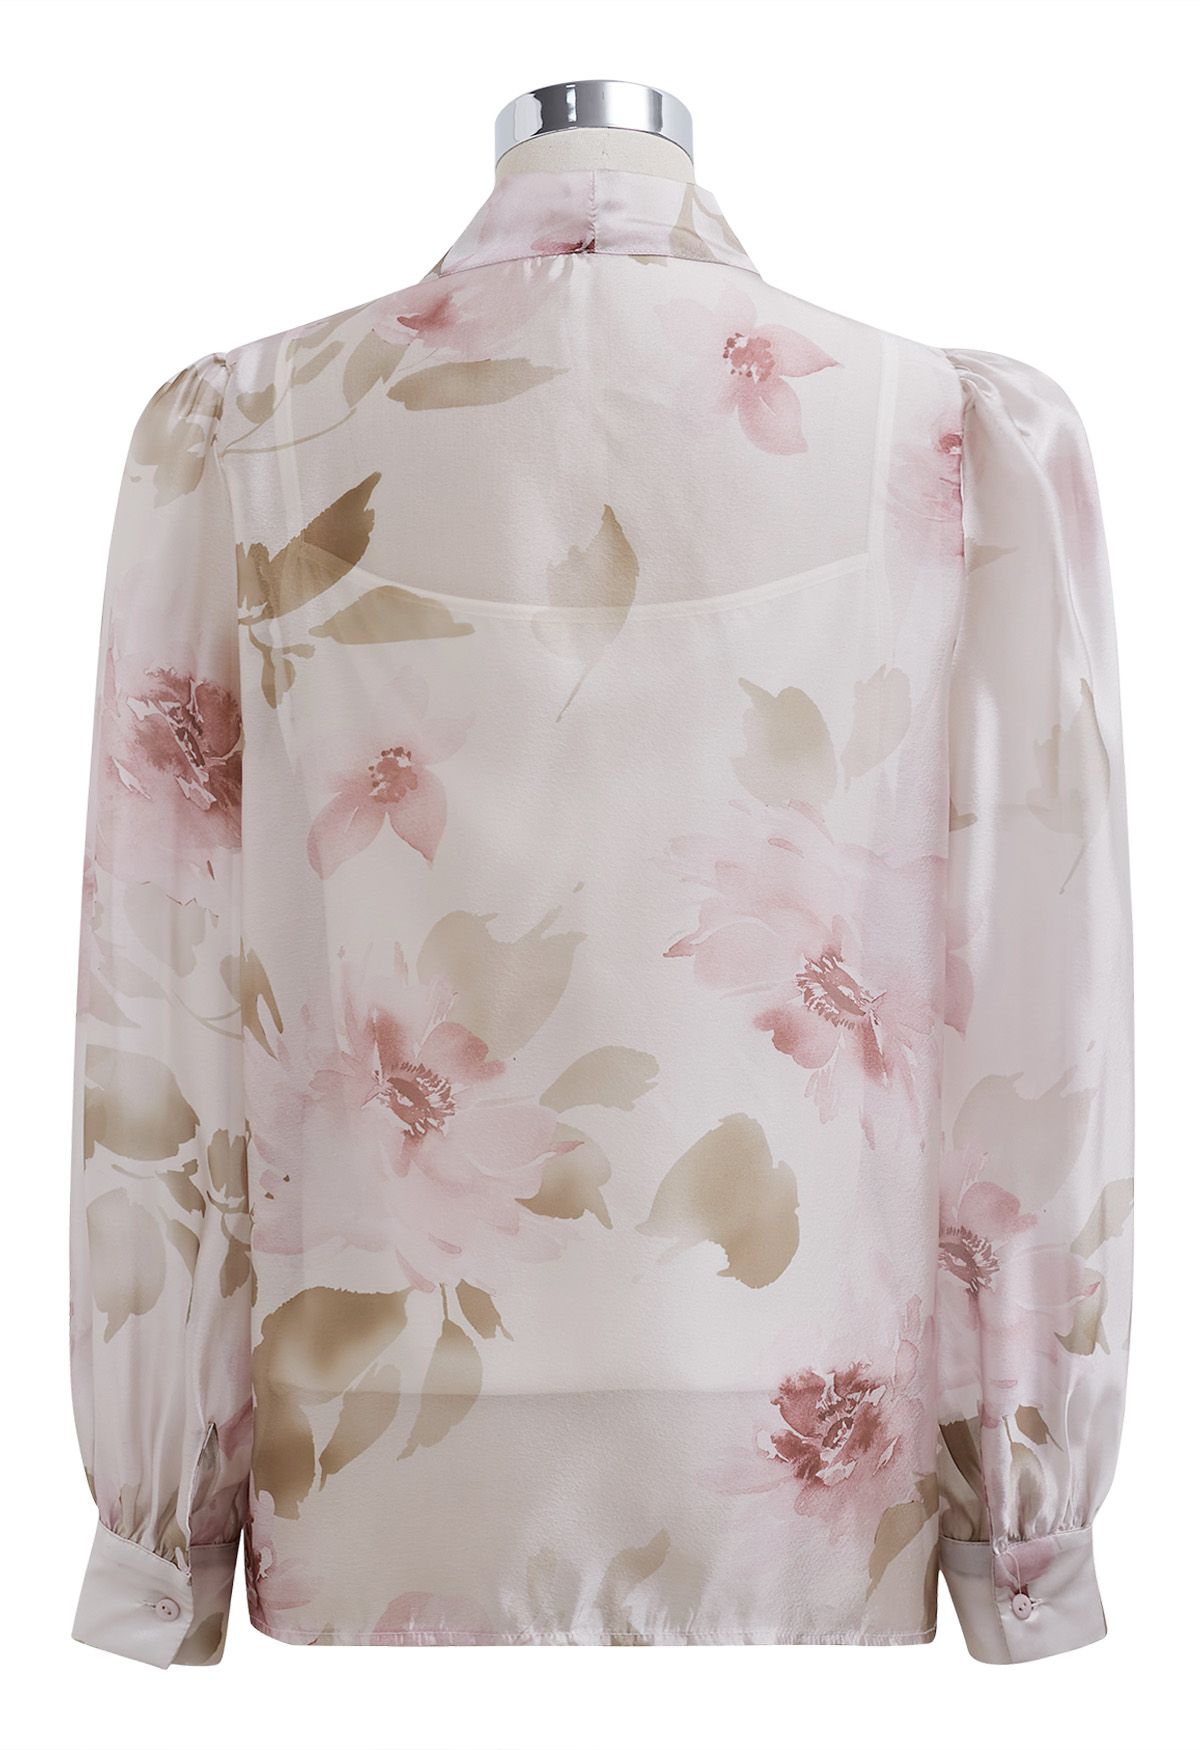 قميص شفاف بعقدة زهور بألوان مائية ساحرة باللون الوردي